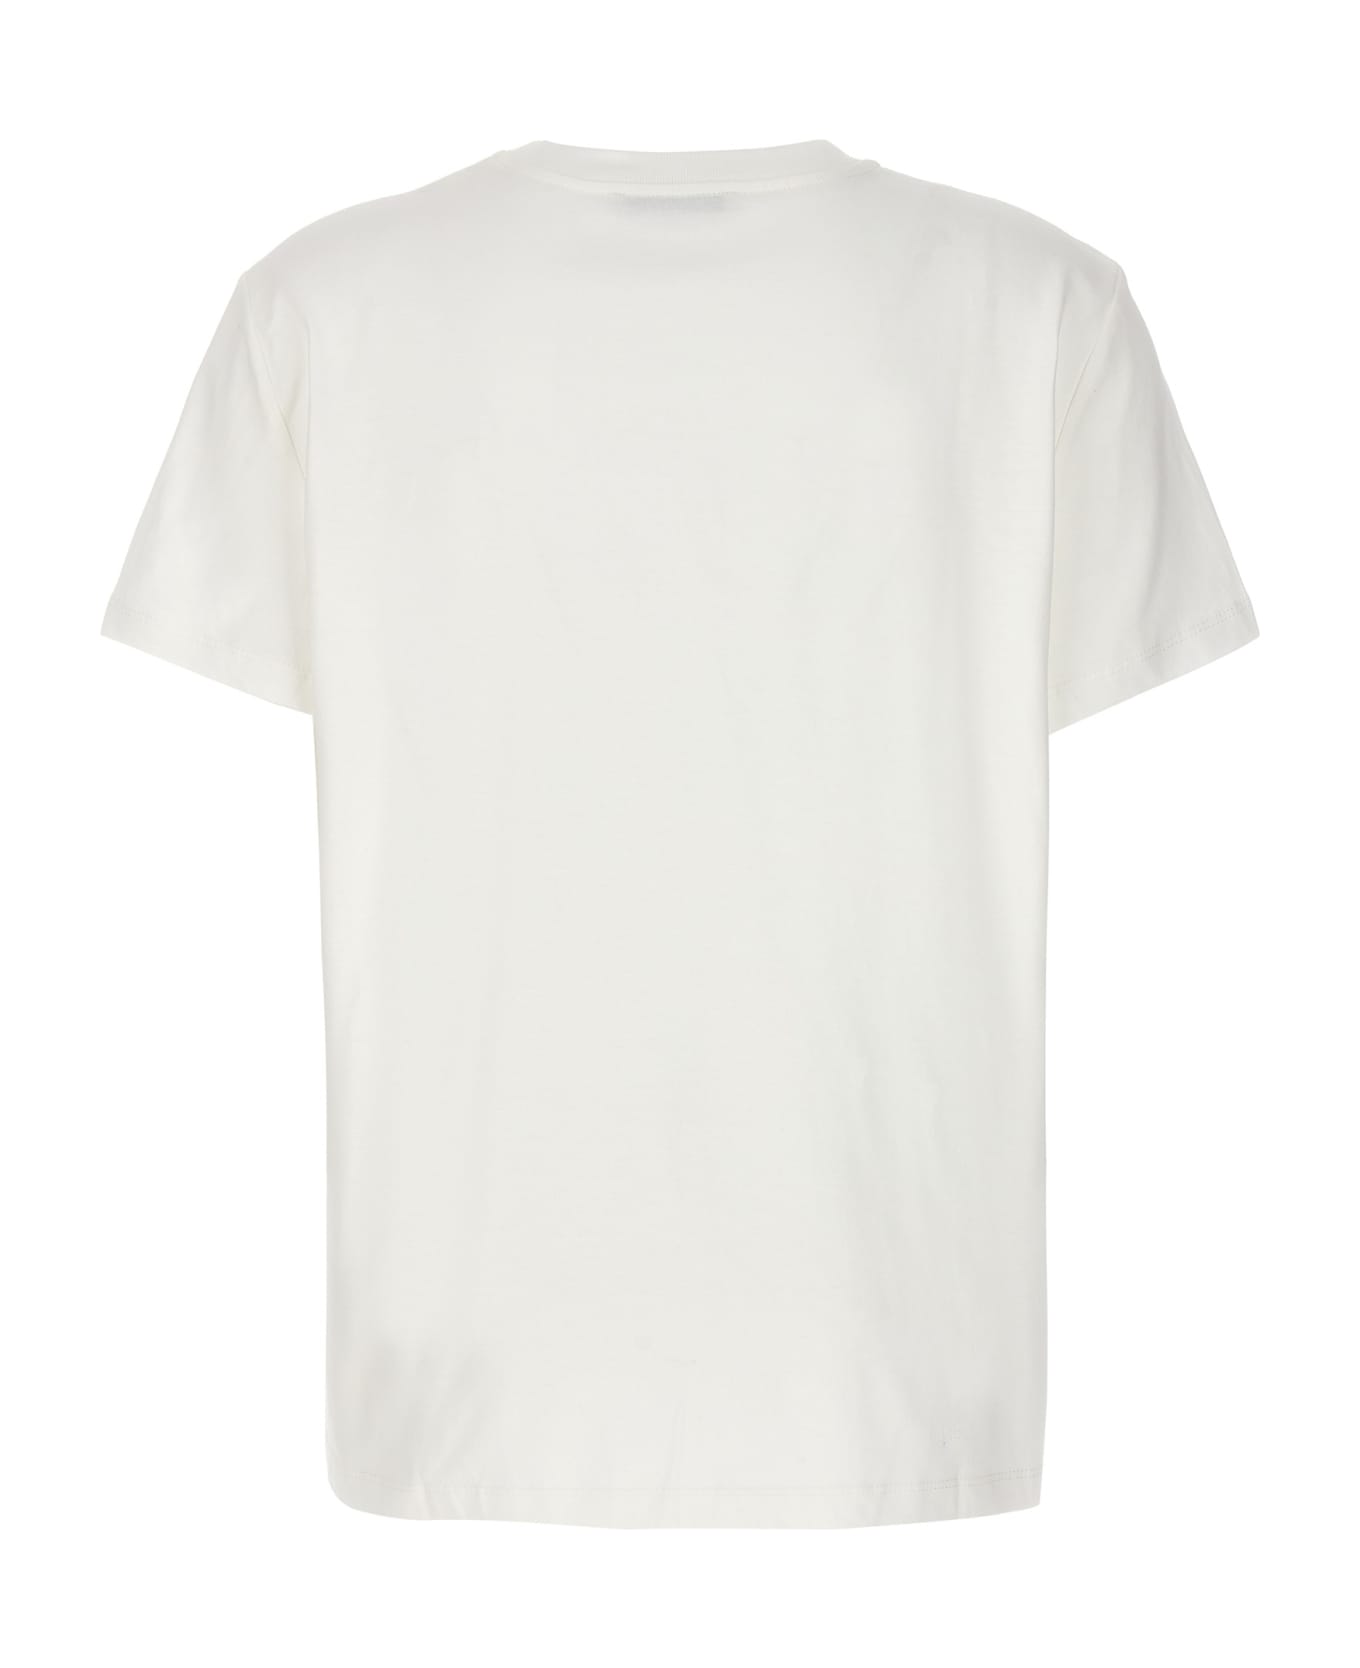 Max Mara 'elmo' T-shirt - White